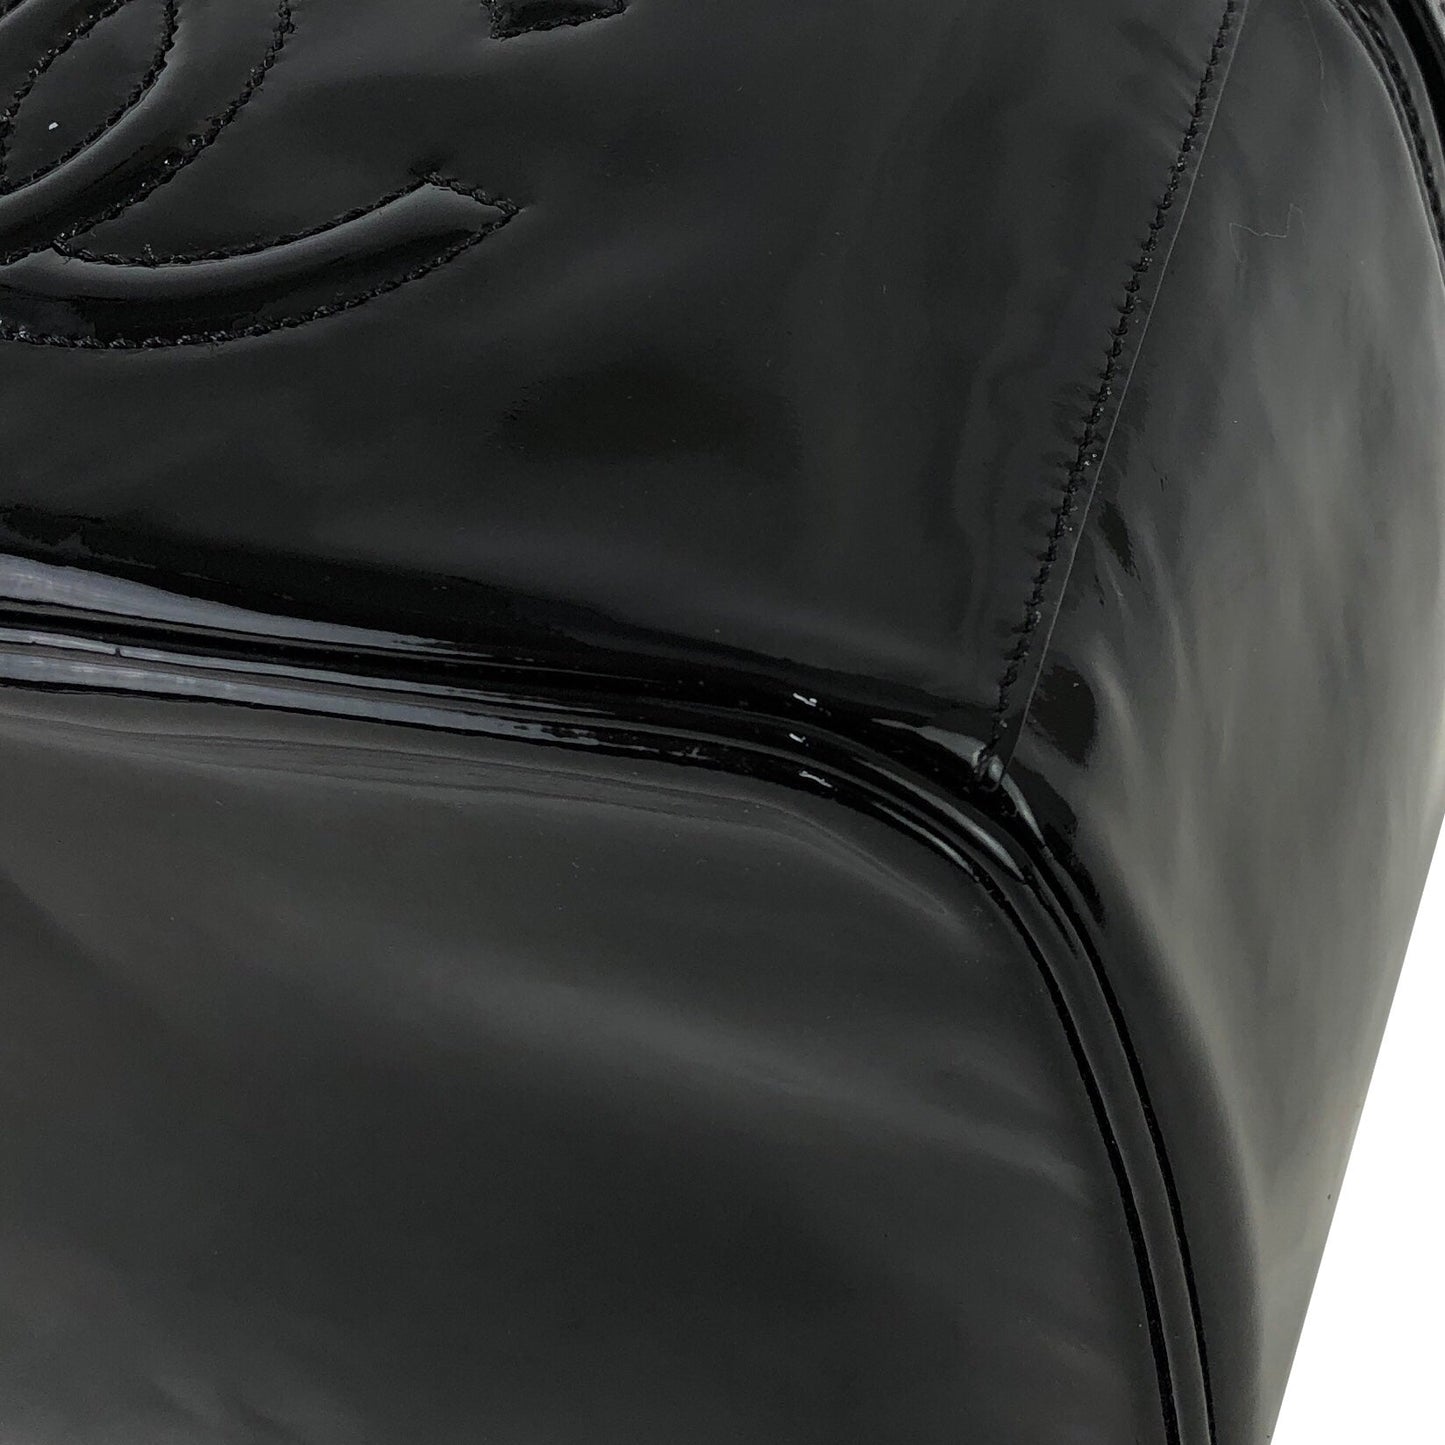 CHANEL Coco mark Patent leather Vanity bag Shoulder Bag Black Vintage Old kfbdgc